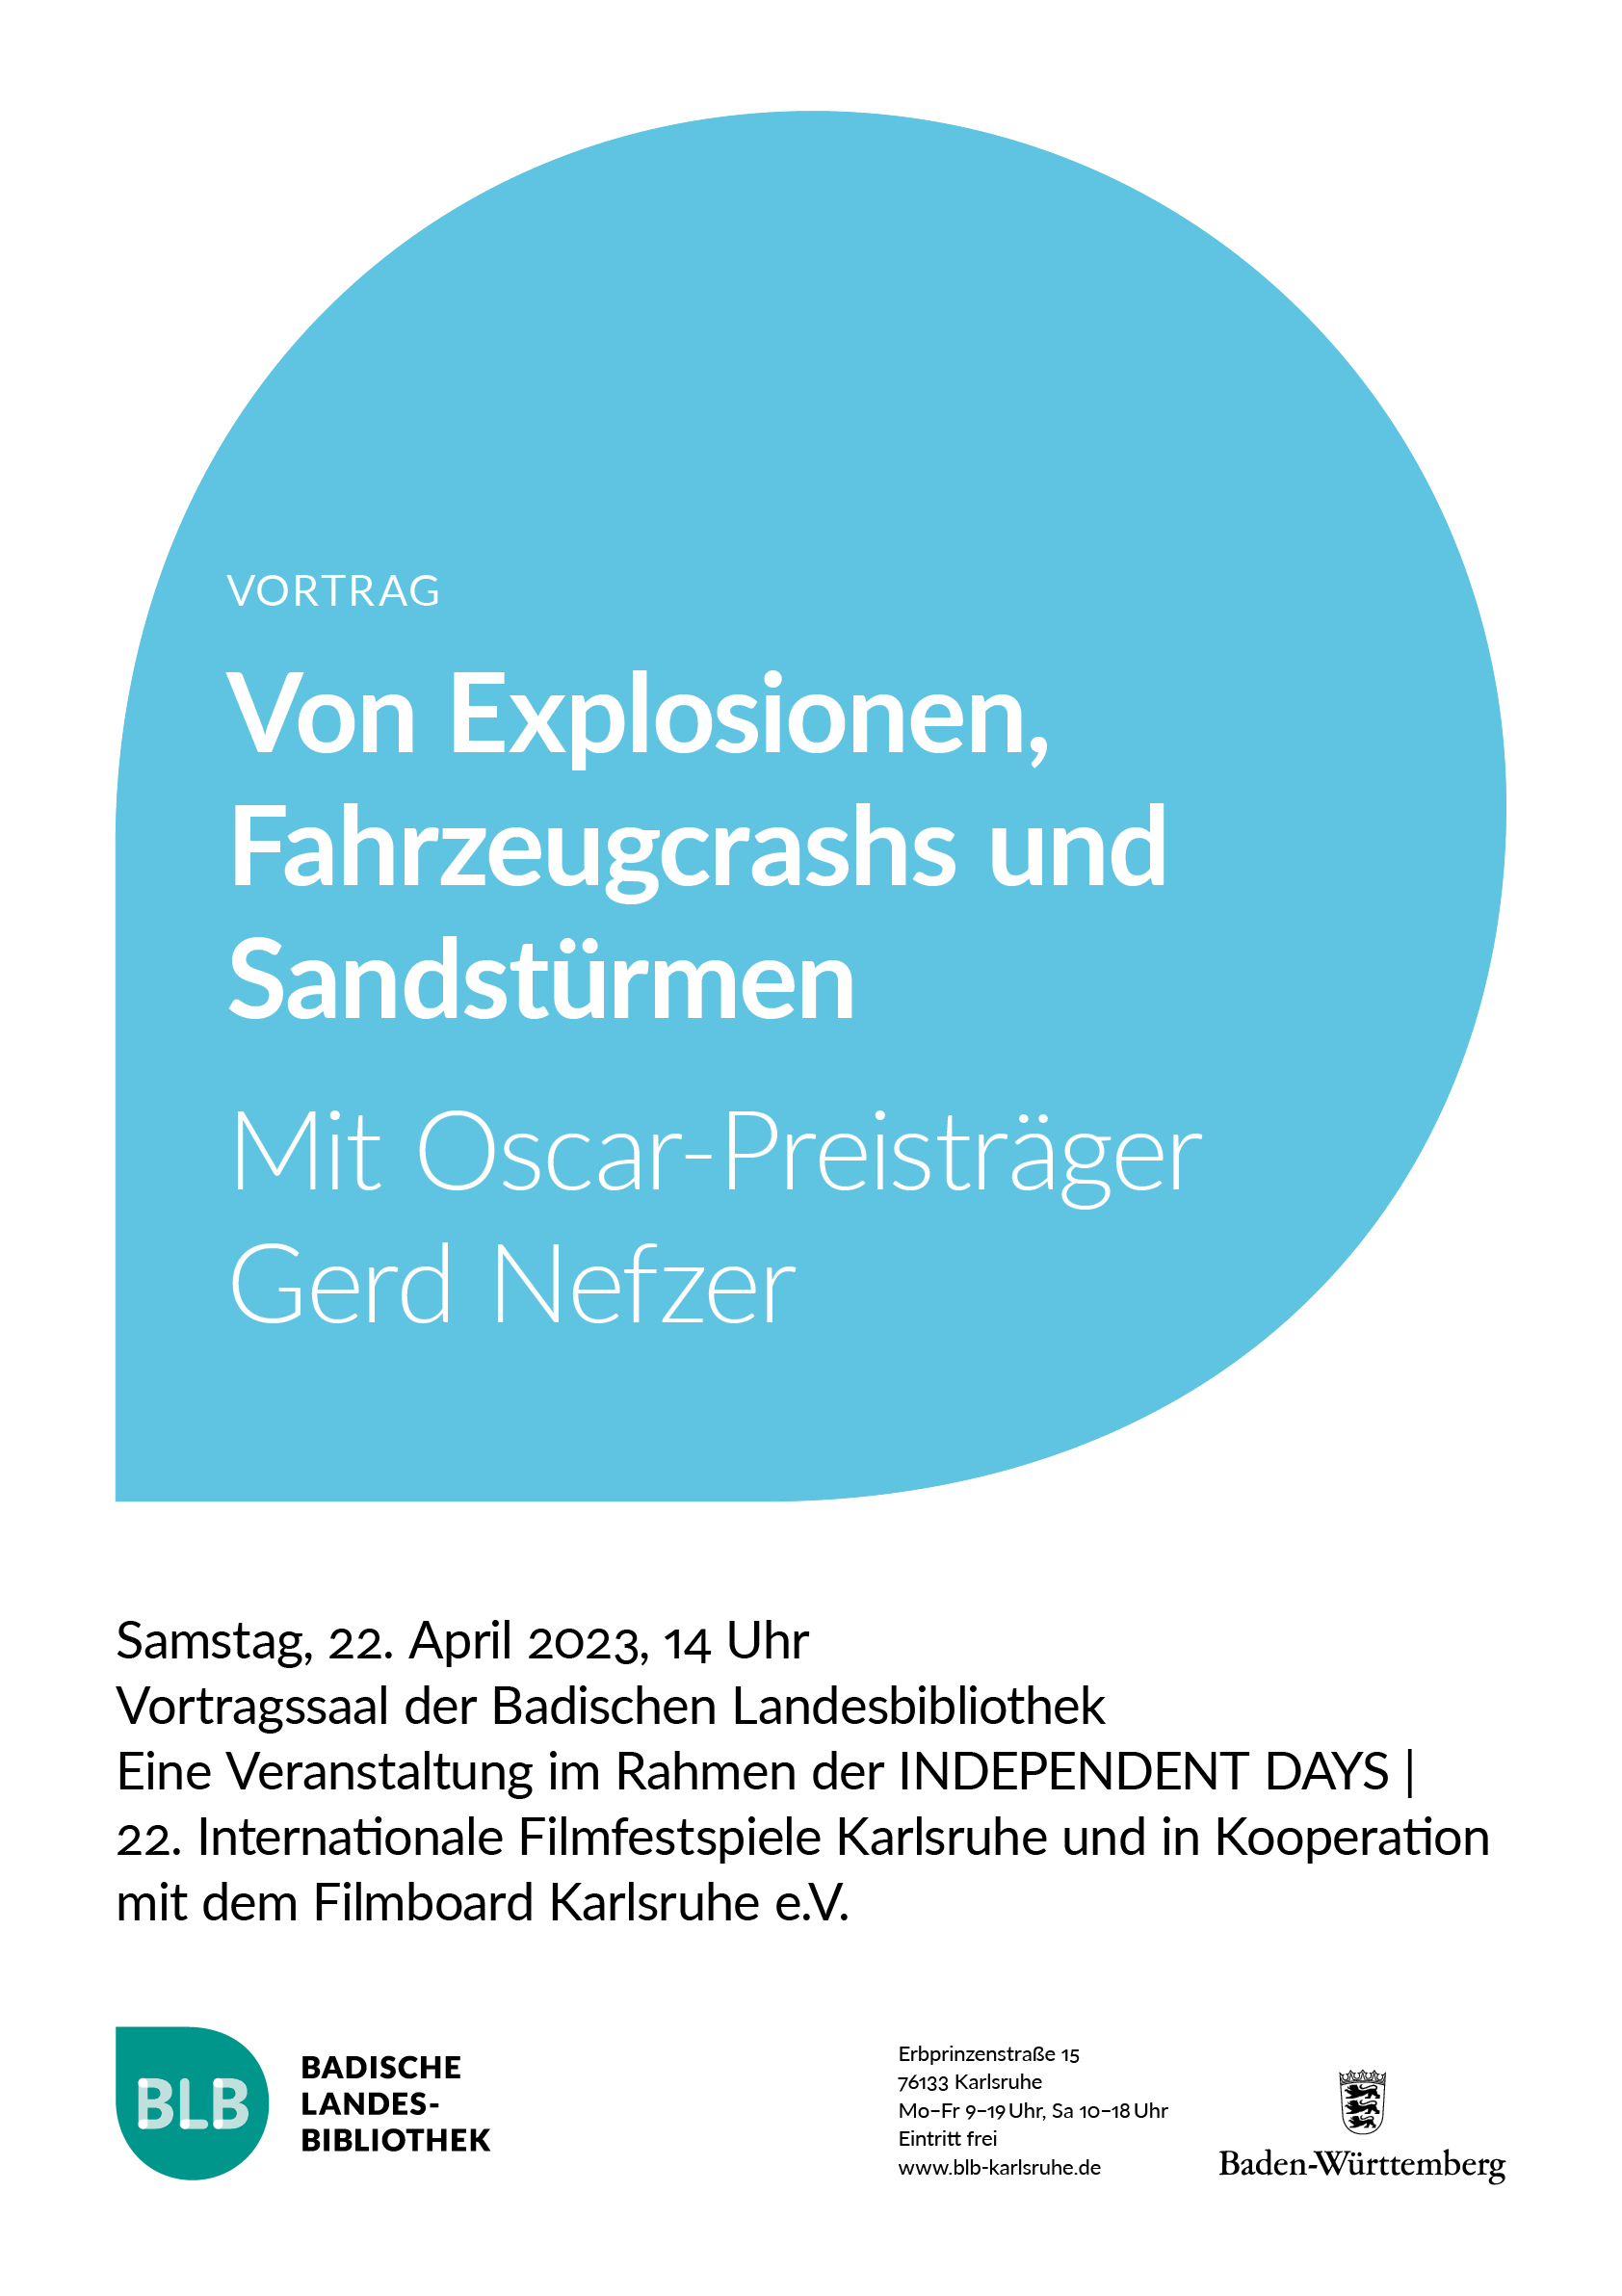 Veranstaltungsplakat für Vortrag mit Oscarpreisträger Gerd Nefzer